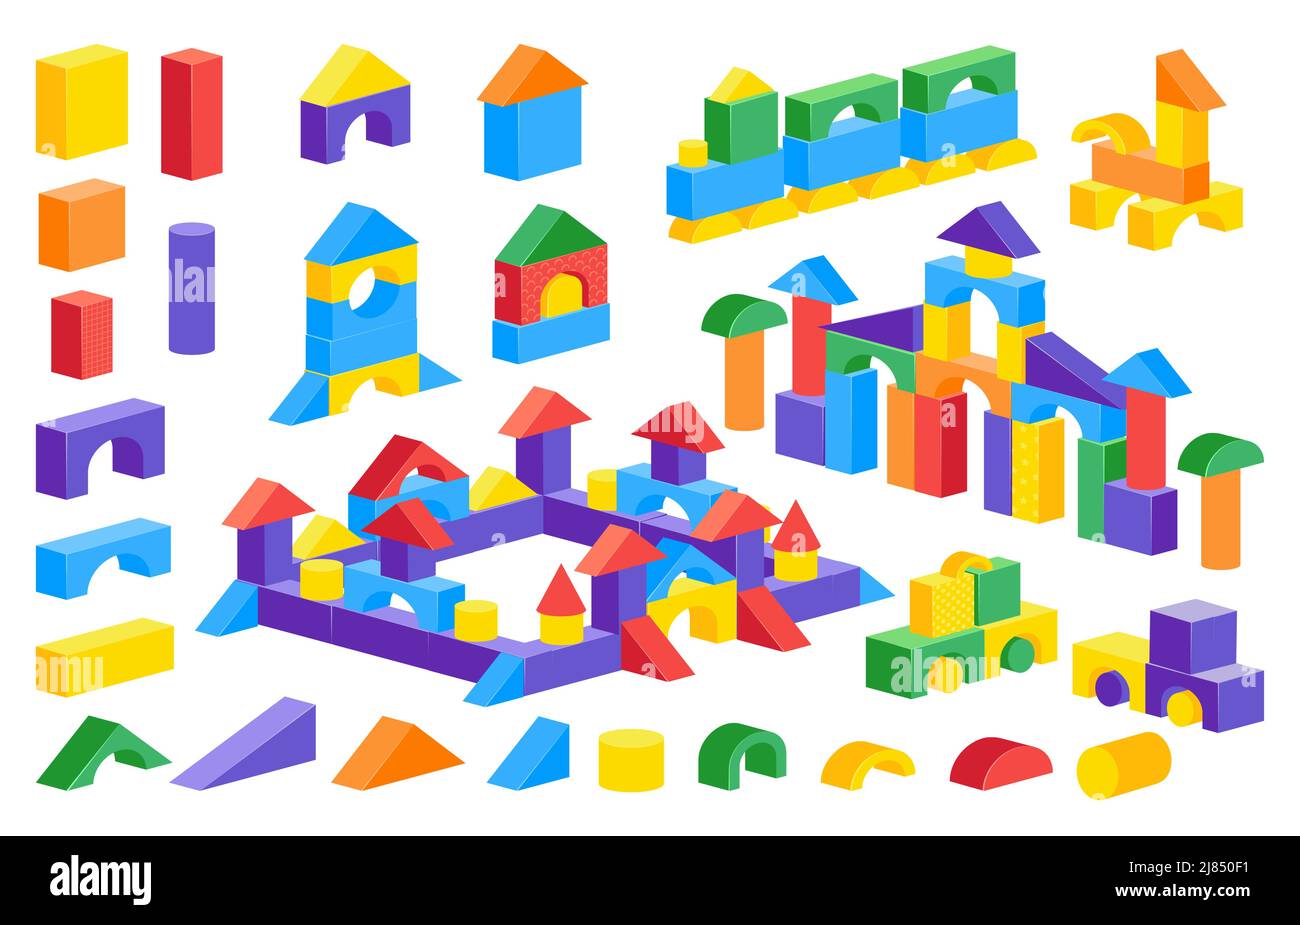 Castillo de bloques de dibujos animados. Juguete constructor colorido de los niños, juego del rompecabezas del ladrillo plástico, castillo del coche de la construcción. Conjunto aislado de piezas de cubo de cono de cilindro vectorial Ilustración del Vector